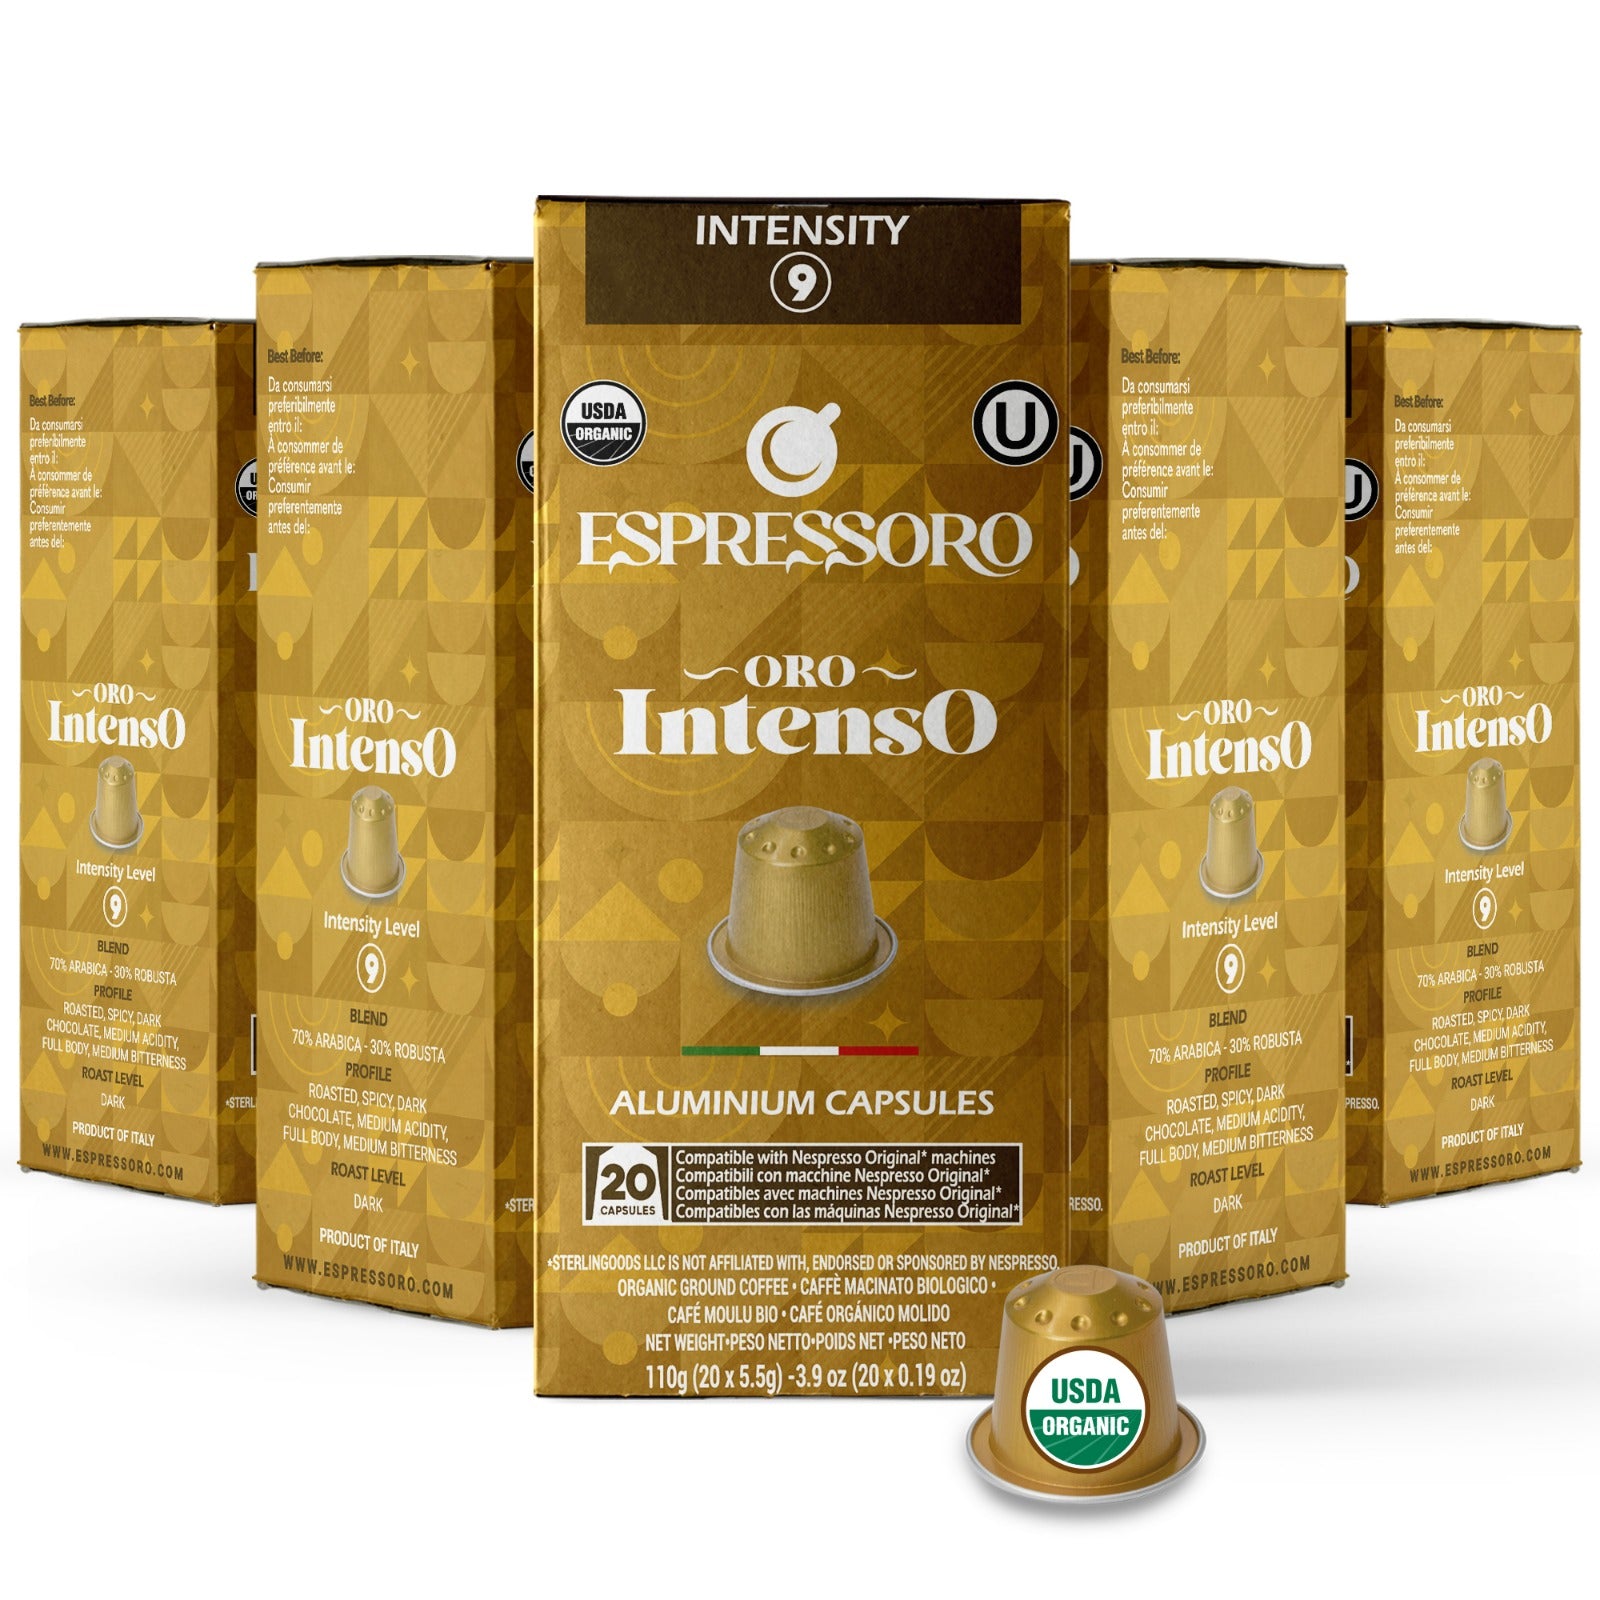 Espresso capsules